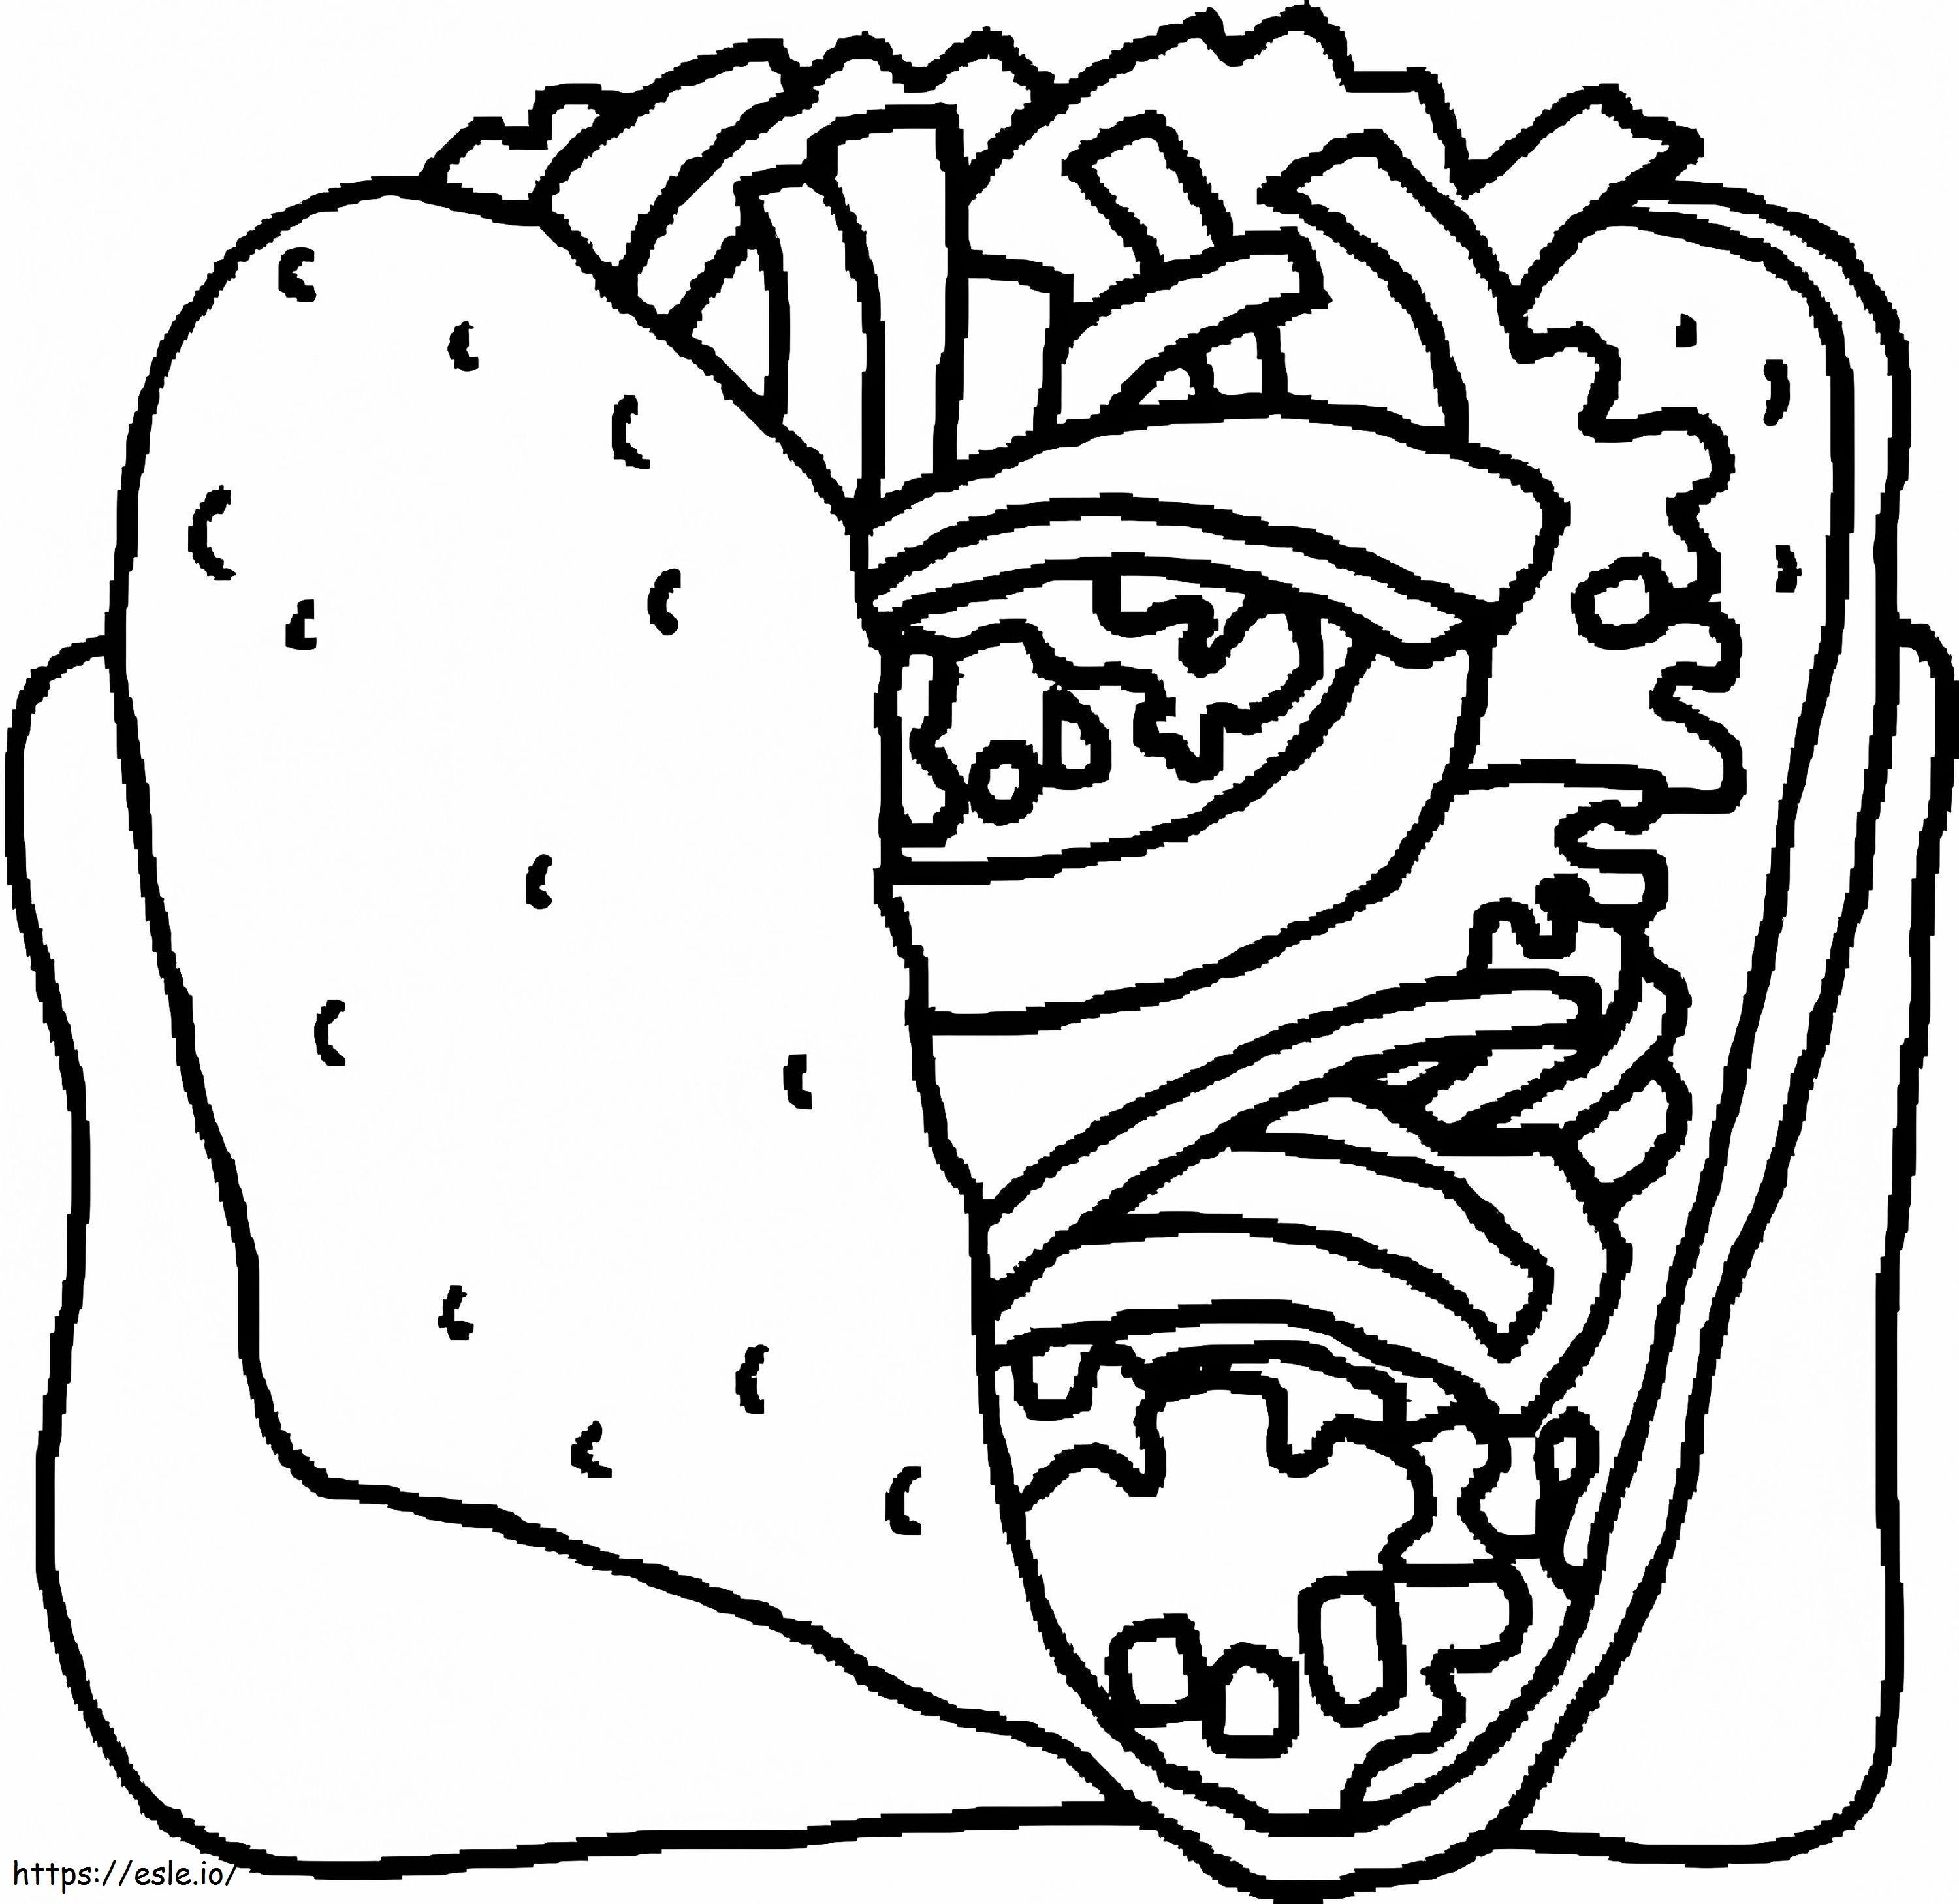 Delicious Taco coloring page